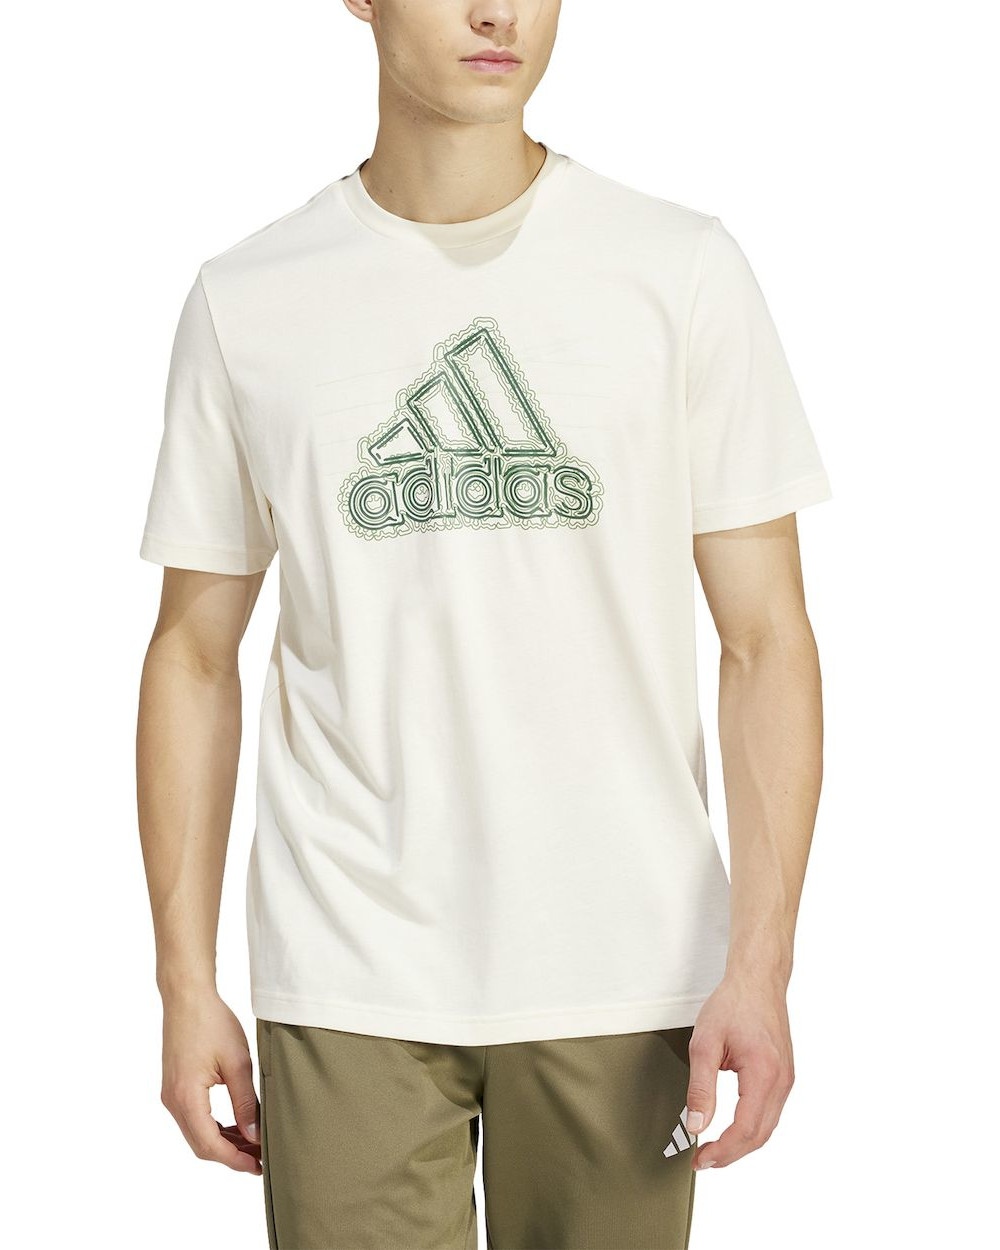  T-shirt maglia maglietta UOMO Adidas Beige Folded Sportswear Graphic Cotone